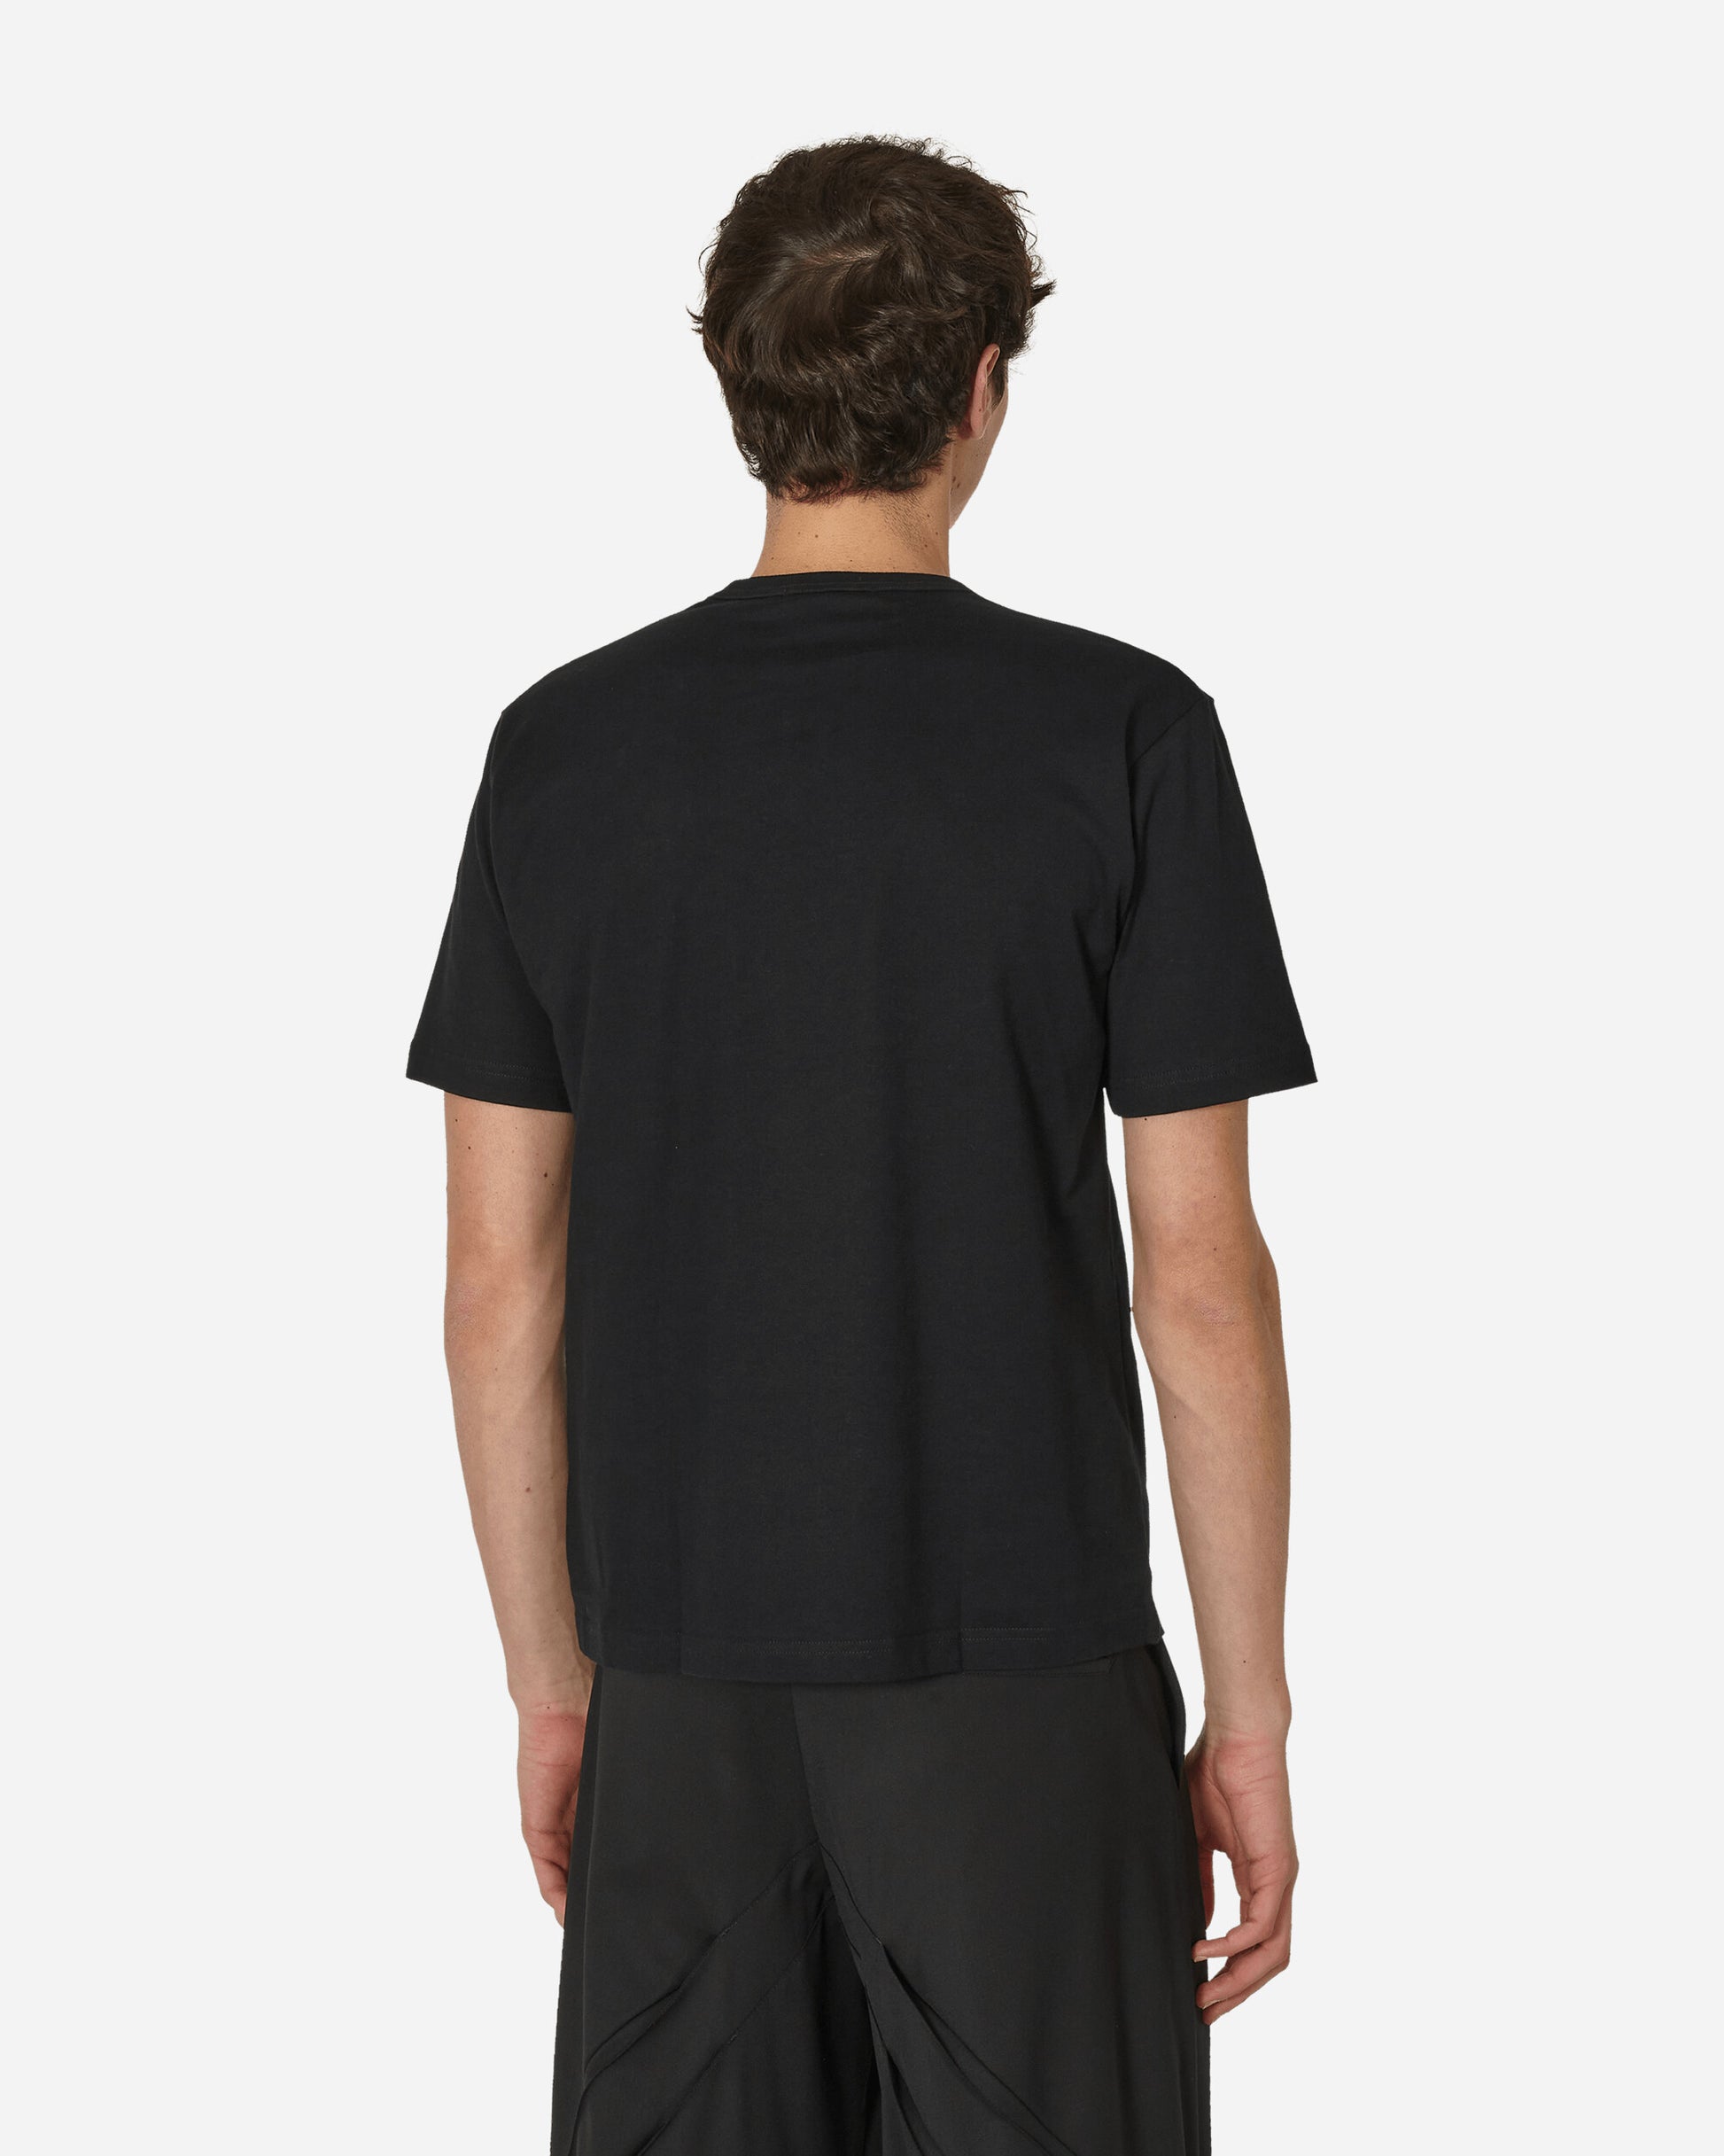 Comme Des Garçons Homme Men'S T-Shirt Black T-Shirts Shortsleeve HM-T101-051 1